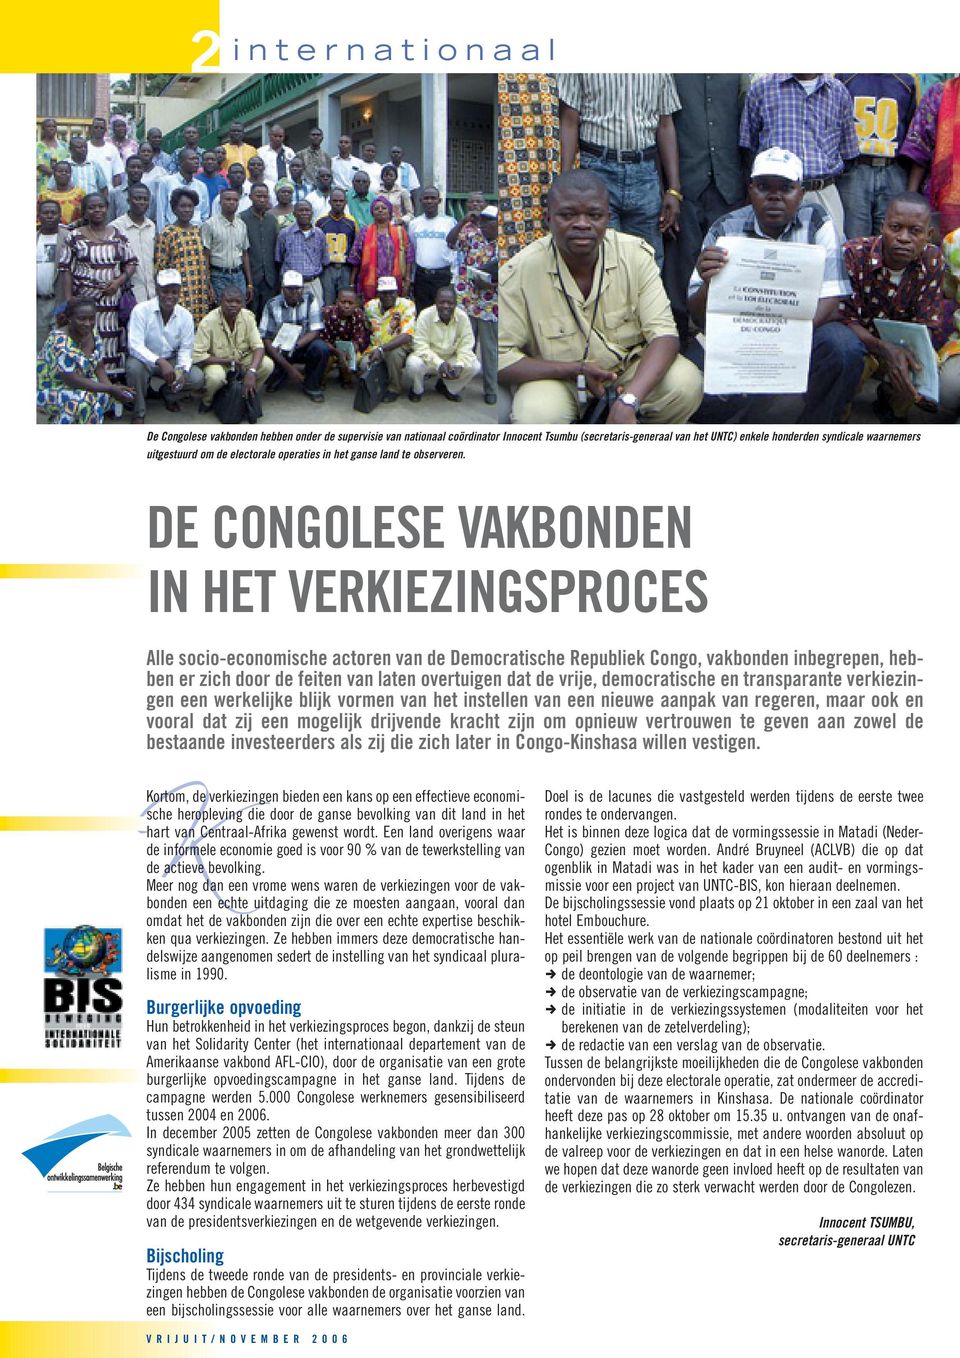 DE CONGOLESE VAKBONDEN IN HET VERKIEZINGSPROCES Alle socio-economische actoren van de Democratische Republiek Congo, vakbonden inbegrepen, hebben er zich door de feiten van laten overtuigen dat de